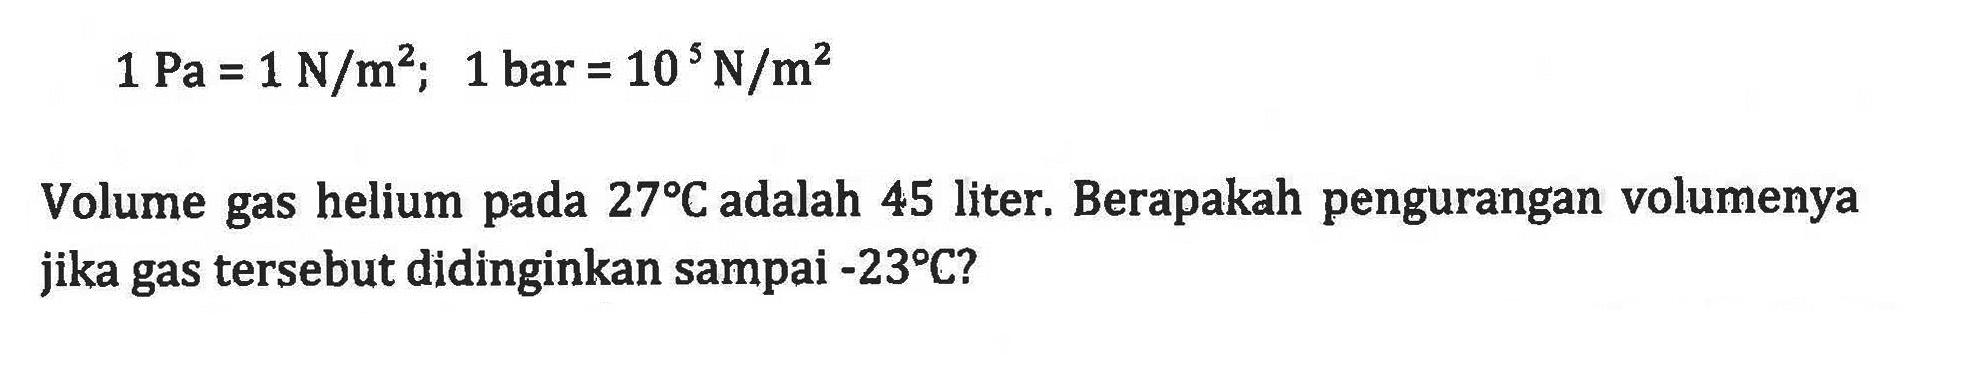 1 Pa = 1 N/m^2; 1 bar = 10^5 N/m^2 Volume gas helium pada 27C adalah 45 liter. Berapakah pengurangan volumenya jika gas tersebut didinginkan sampai -23C?